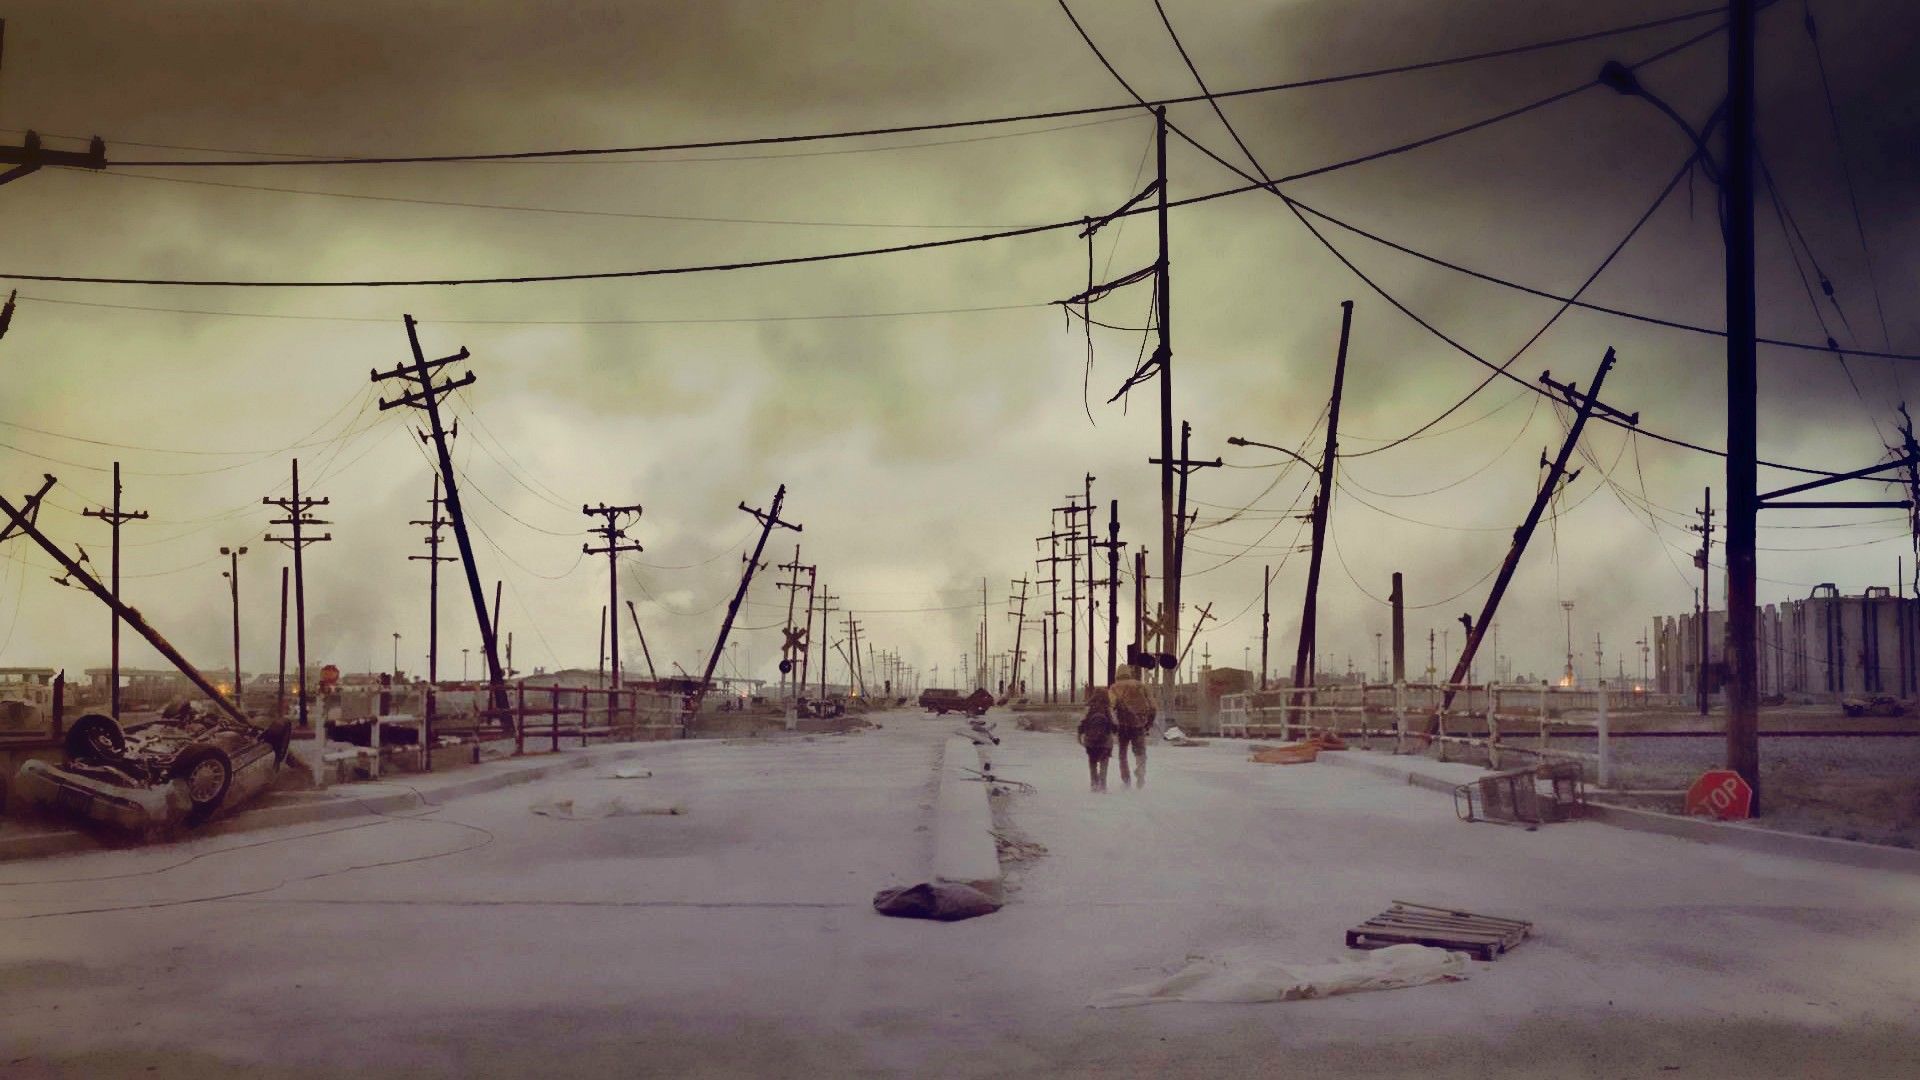 عکس استوک از شهر متروکه در زمستان و طوفانی از خاک 